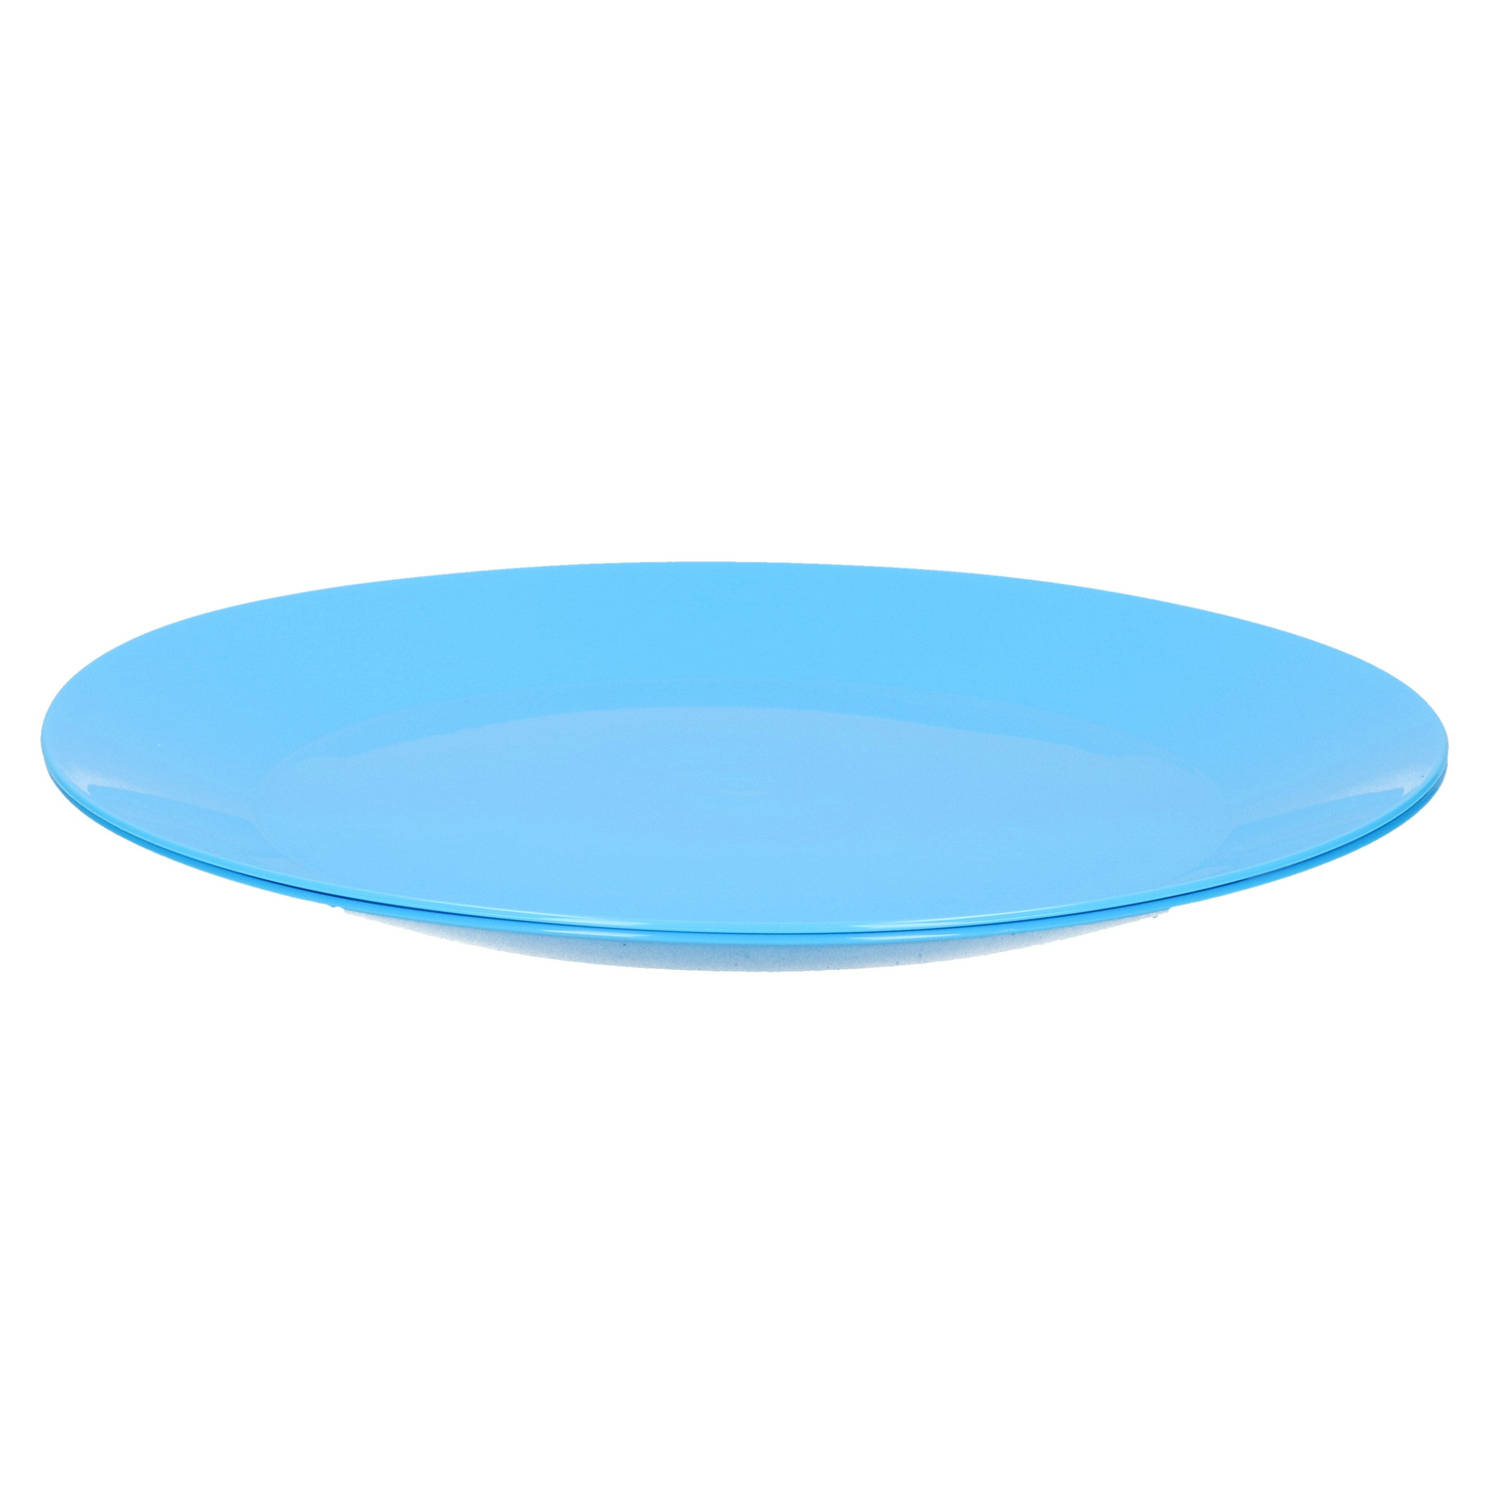 2x ontbijt/diner bordjes van hard kunststof 26 cm in het blauw - Campingborden